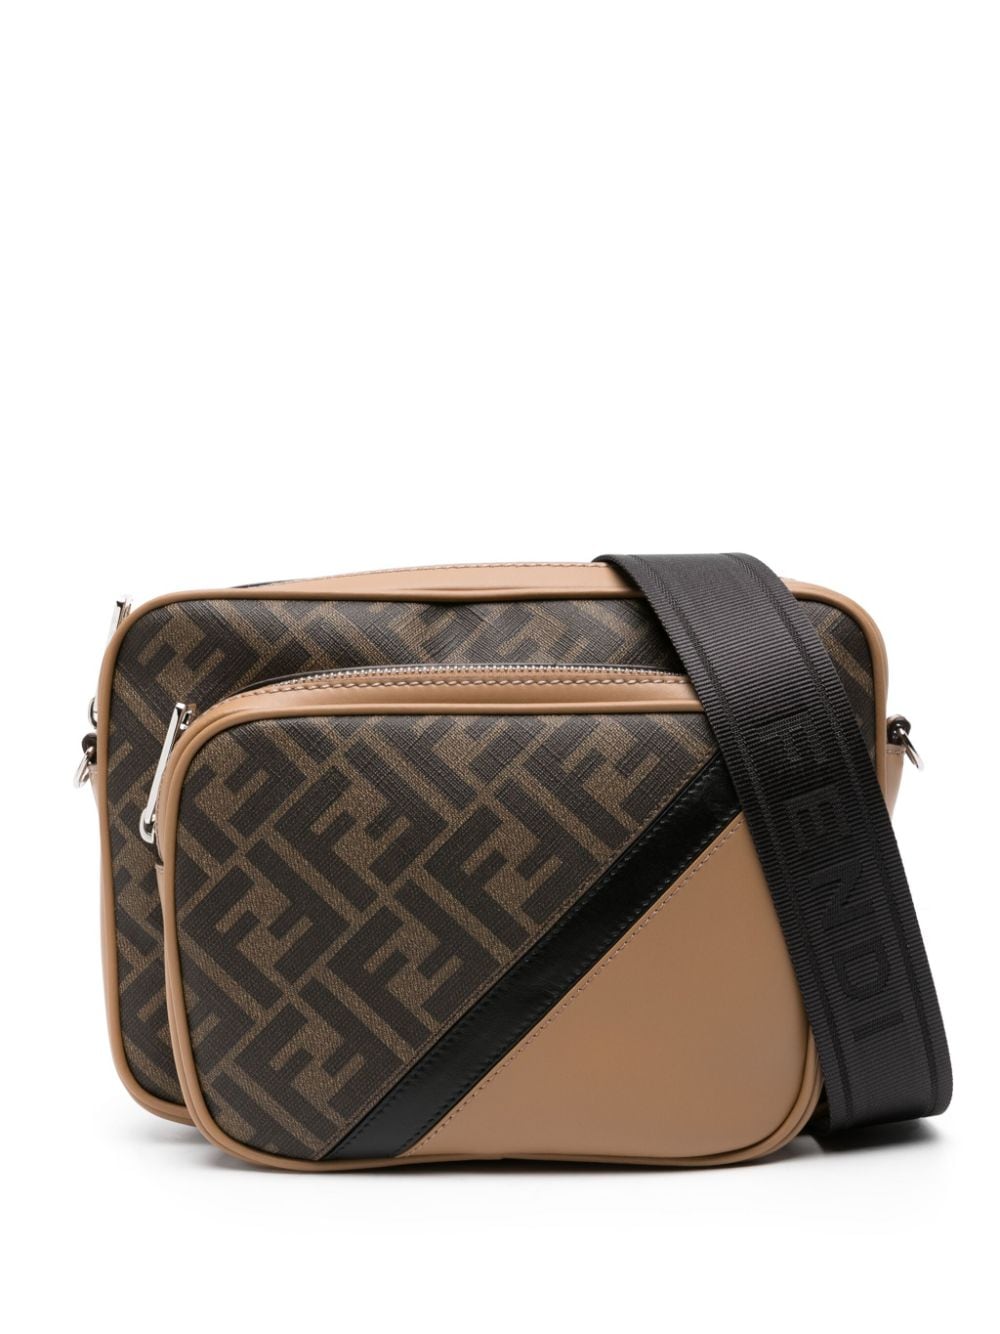 Image 1 of FENDI FF-pattern leather shoulder bag